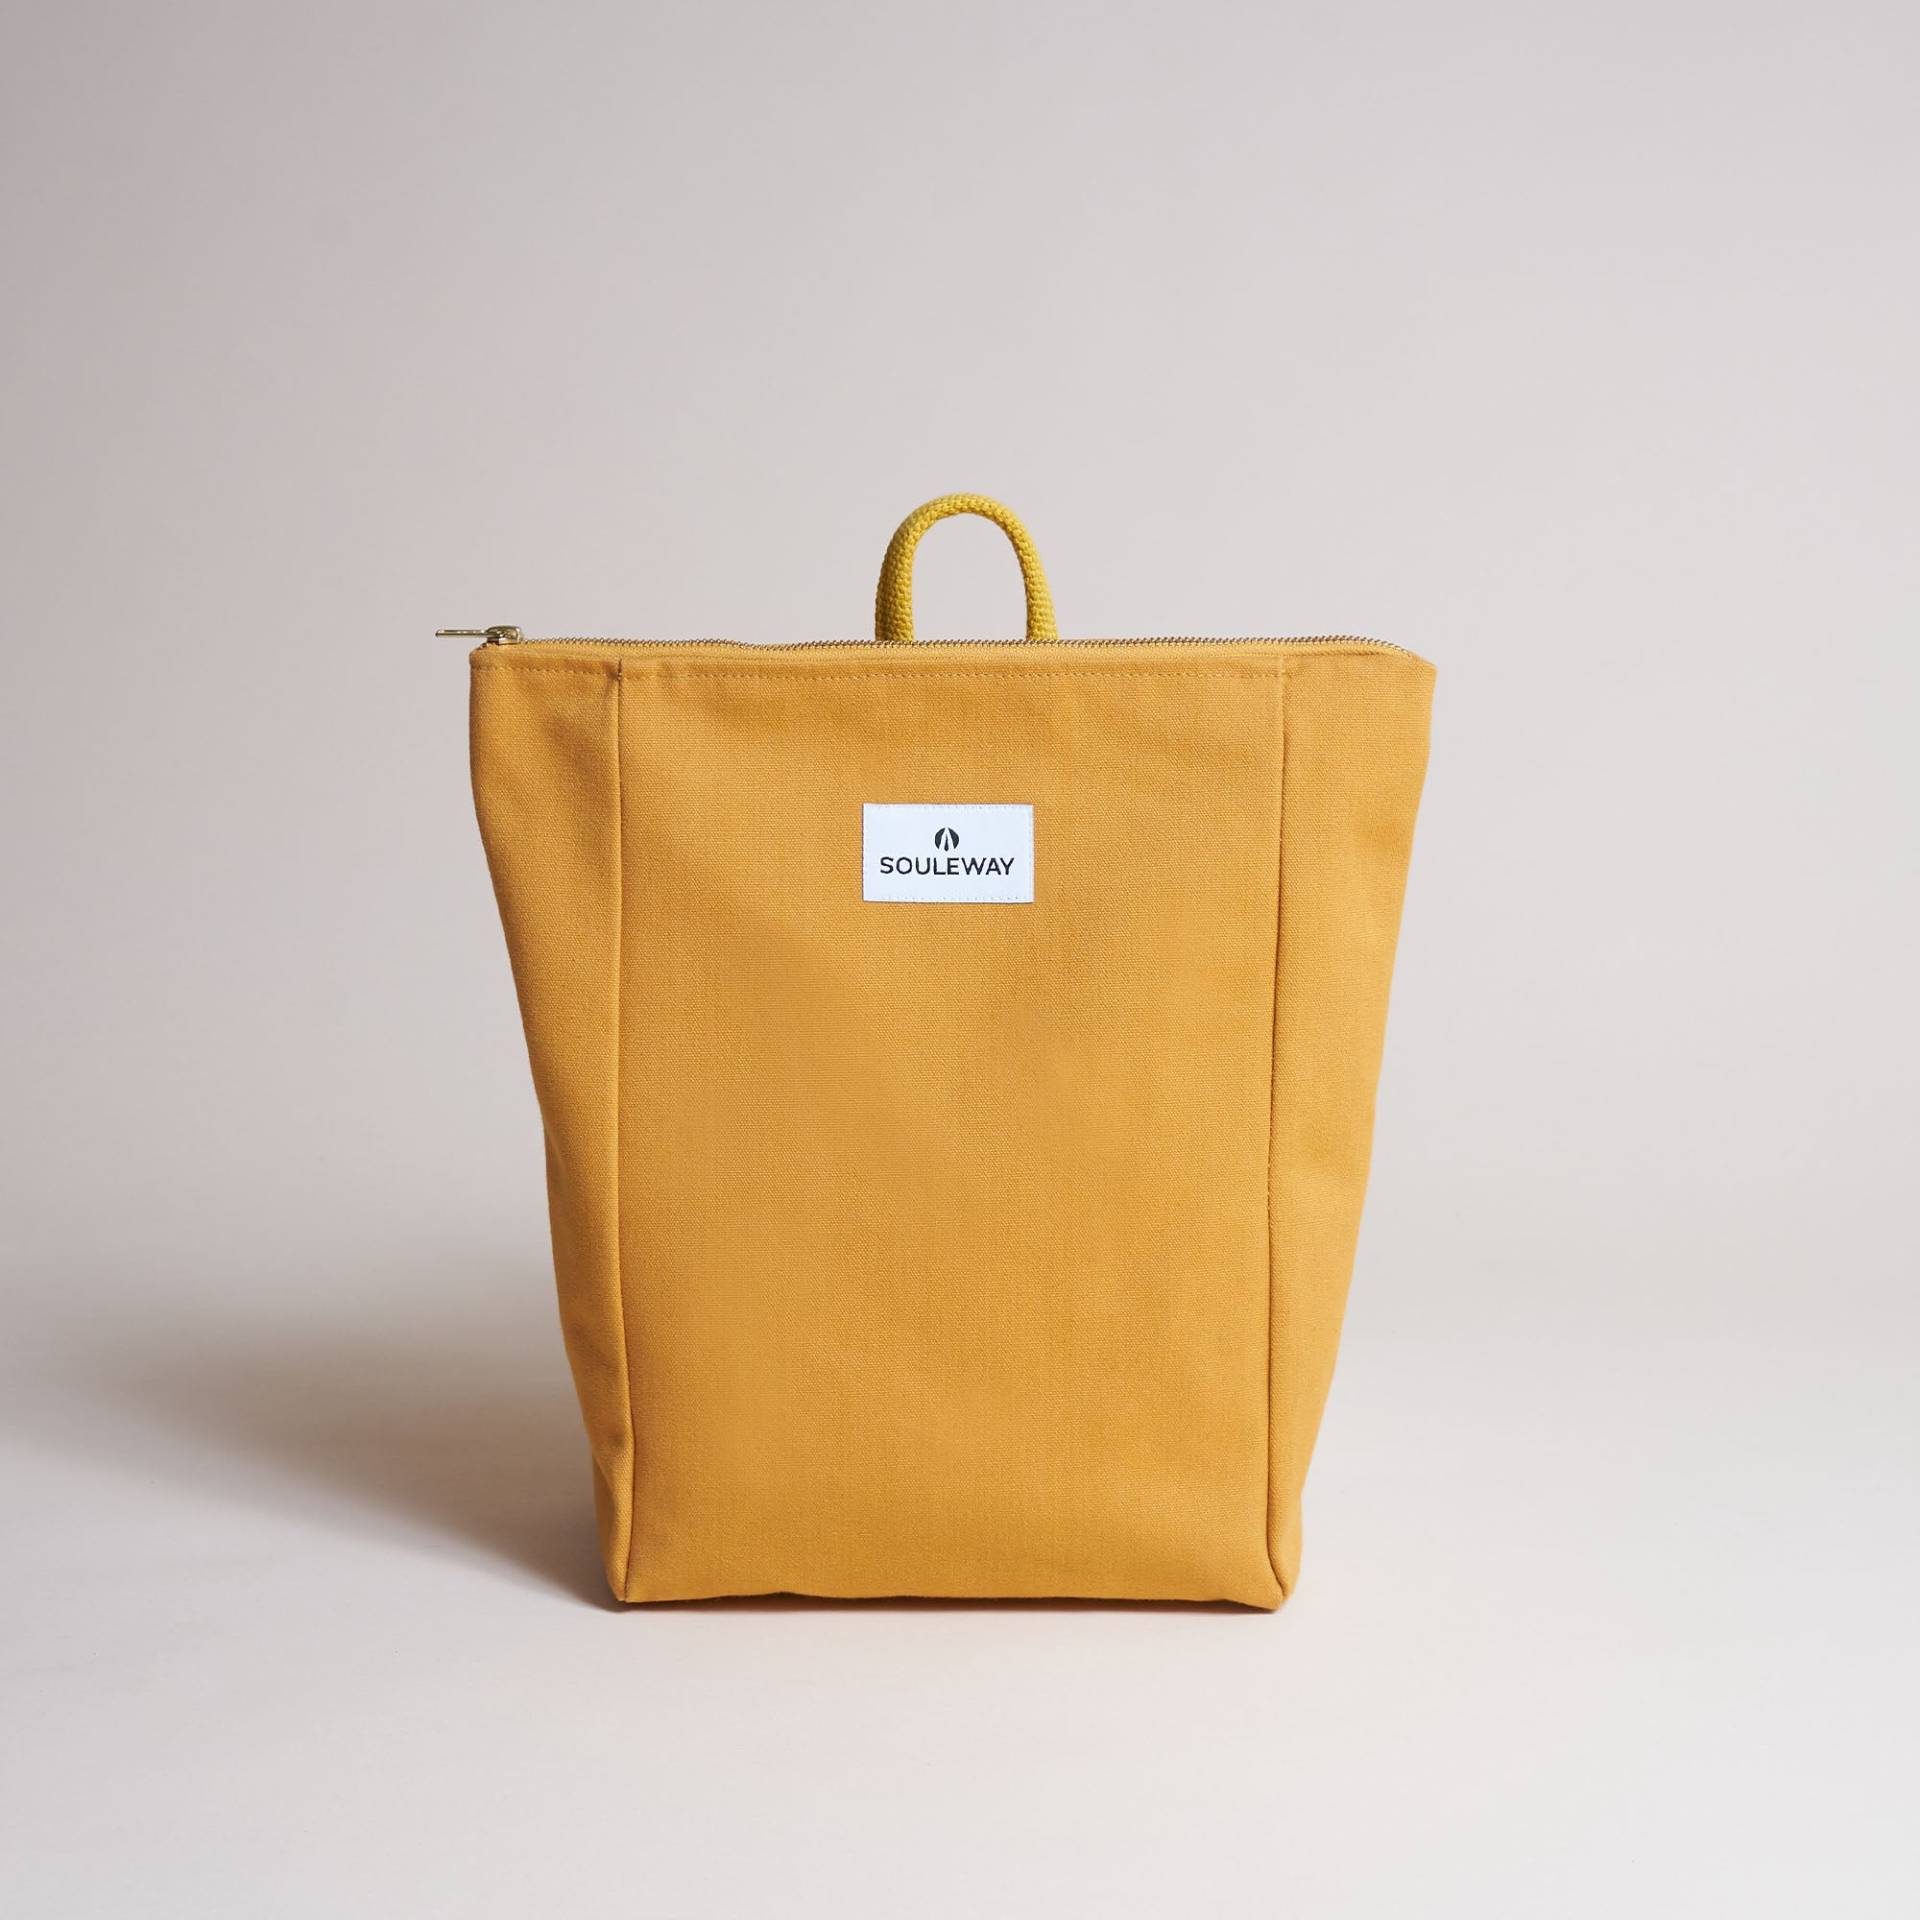 SOULEWAY - Simple Backpack S, Rucksack, 9 Liter Volumen, Laptopfach 13 Zoll, Made in Germany, Handgepäck, vegan, wasserabweisend, Mustard Yellow von Souleway